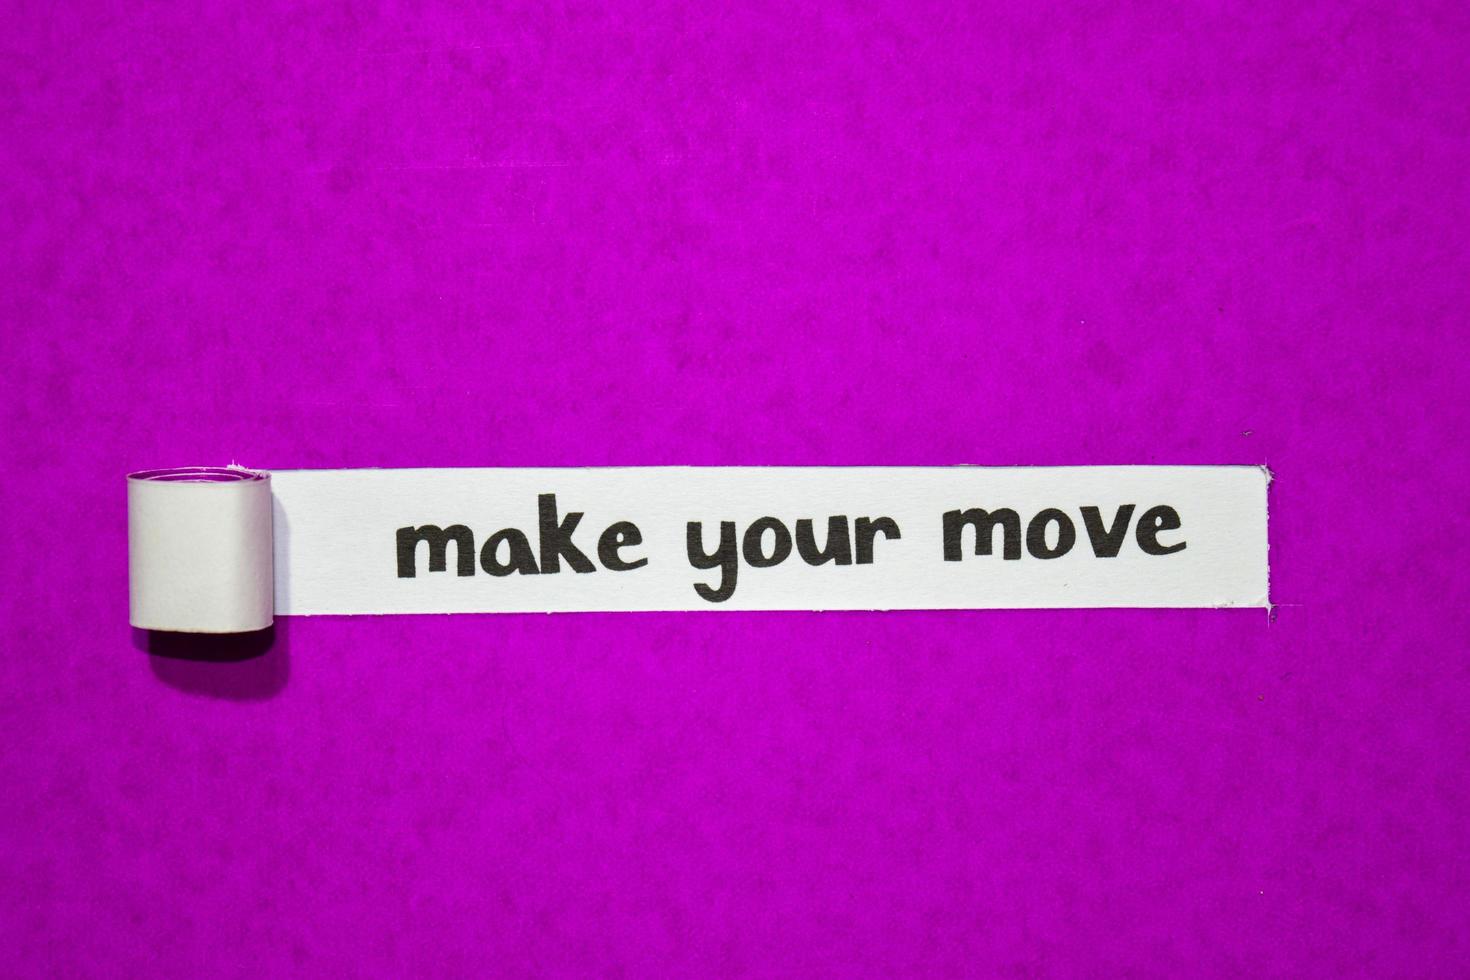 Haga su movimiento texto, inspiración, motivación y concepto de negocio en papel rasgado violeta foto